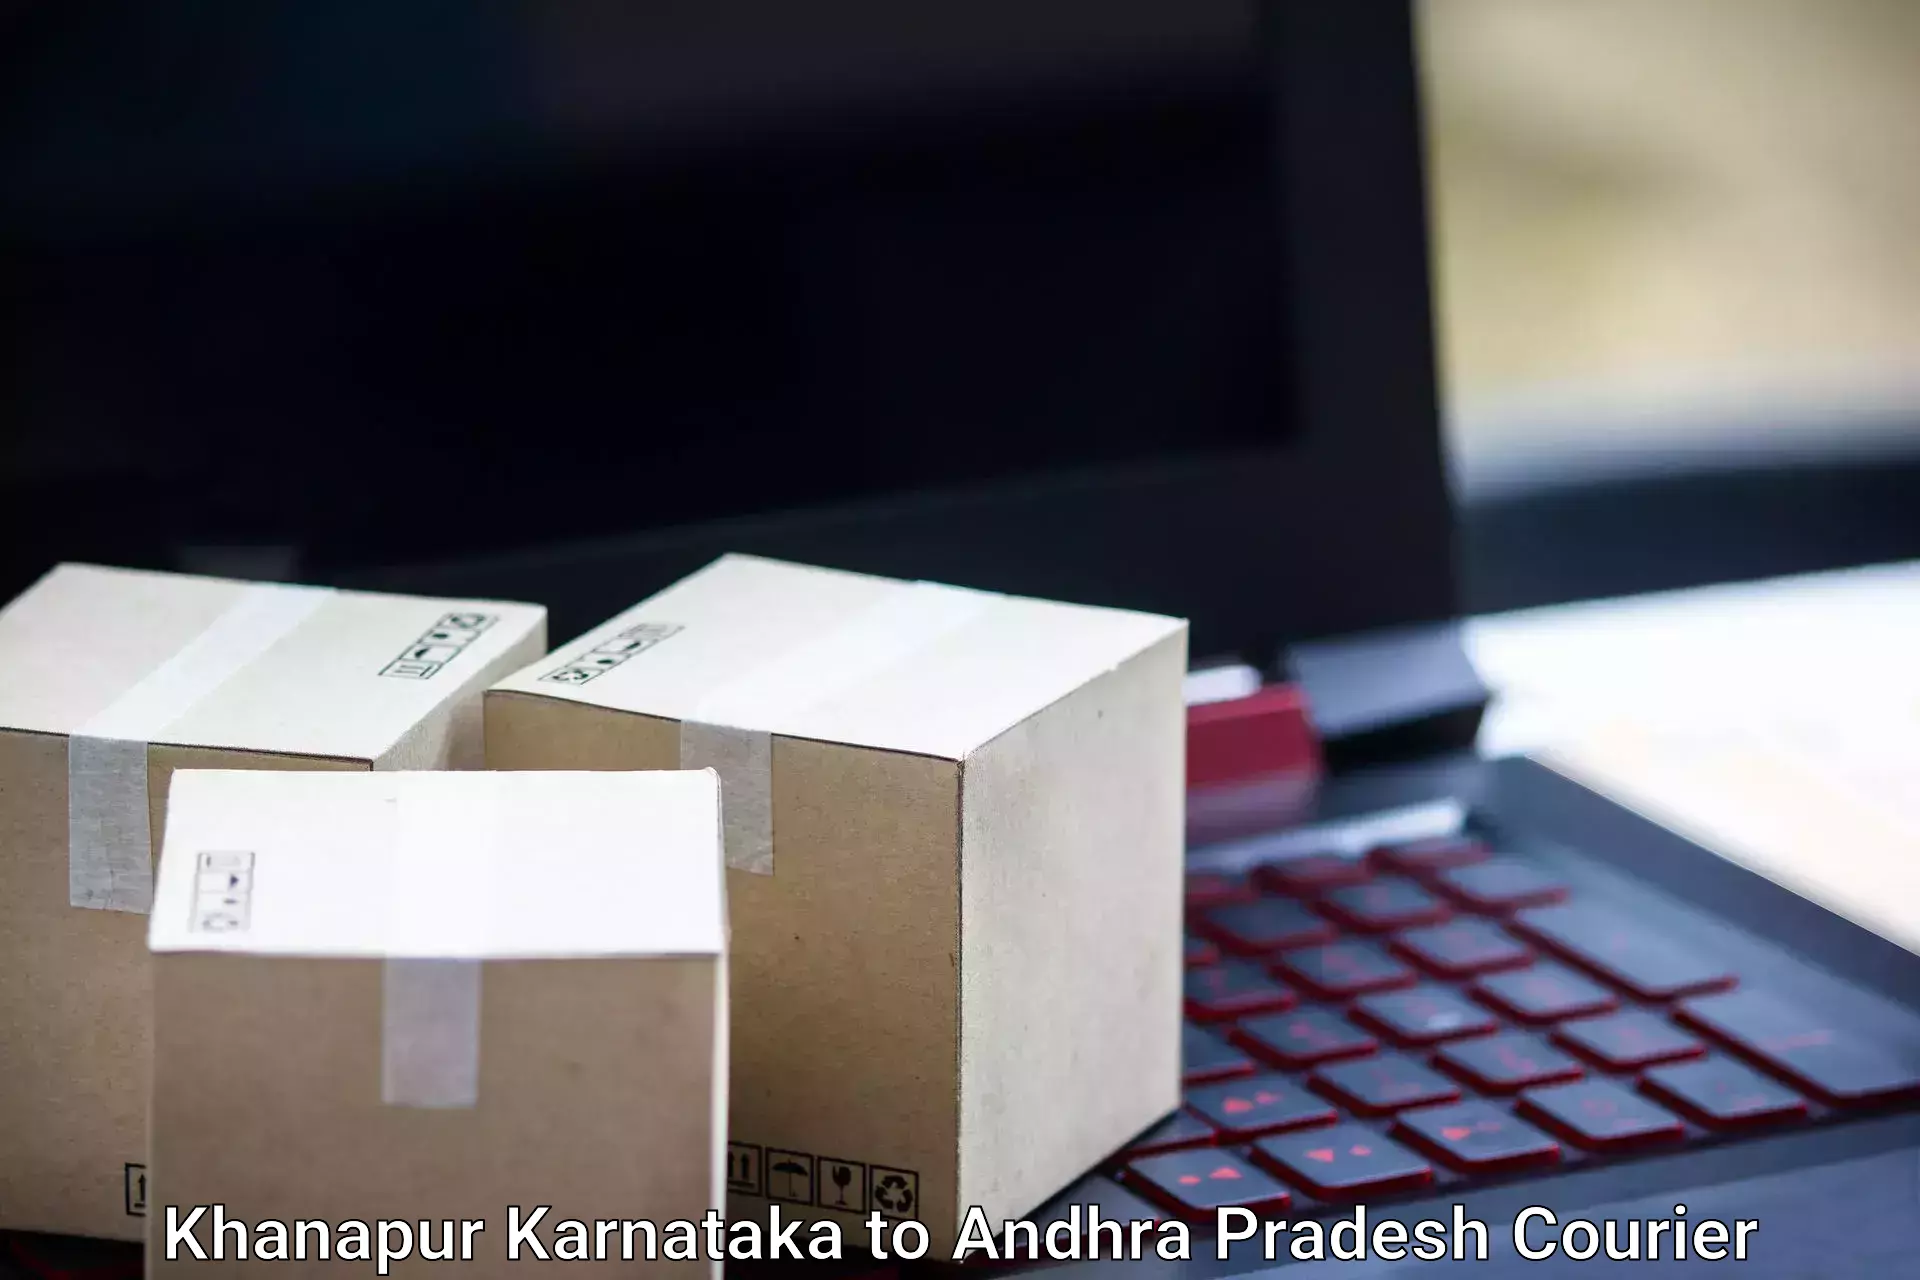 Luggage delivery providers Khanapur Karnataka to IIIT Chittoor